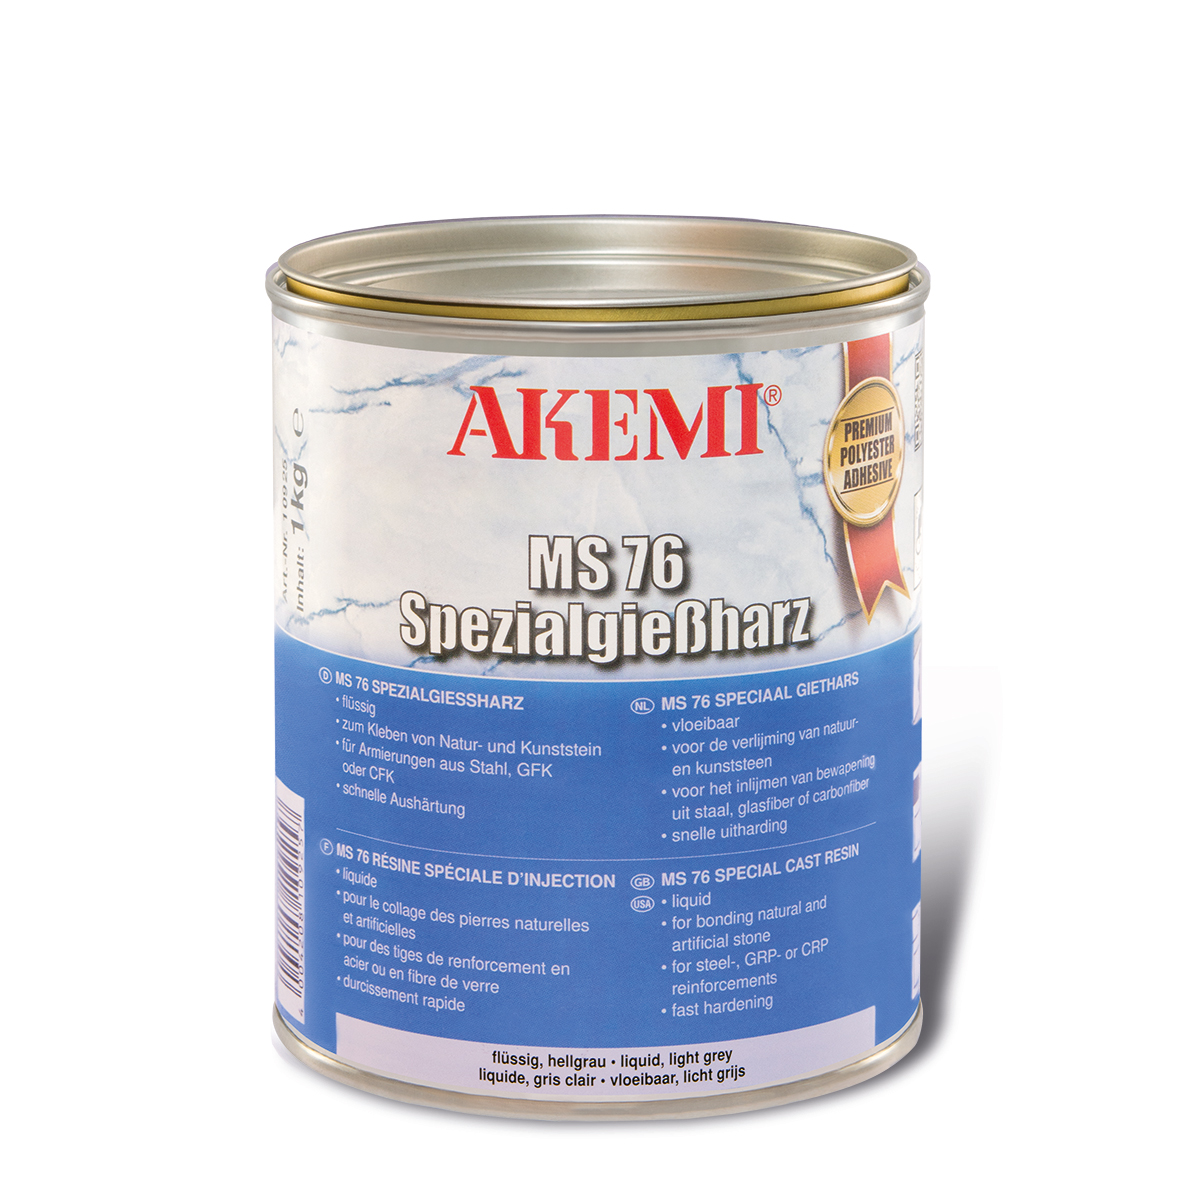 Akemi MS76 Flüssig - Spezialgießharz 1kg 10925